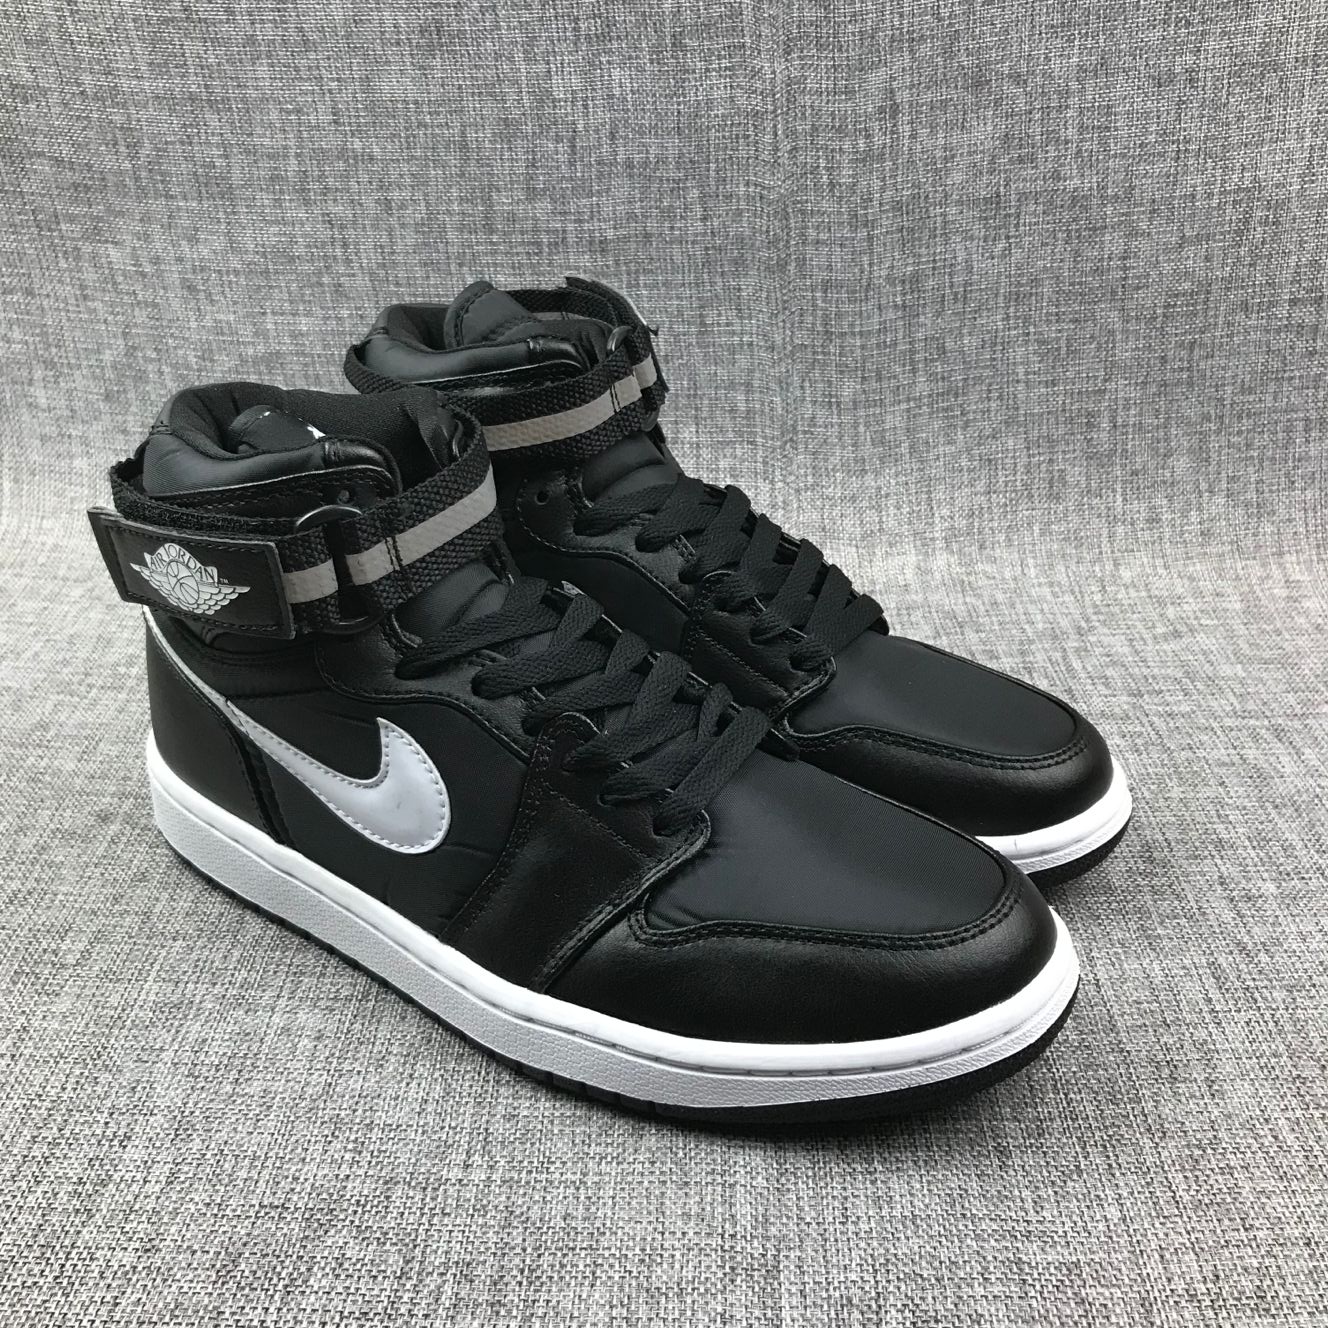 2019 Men Jordan 1 Strap Black Silver Shoes